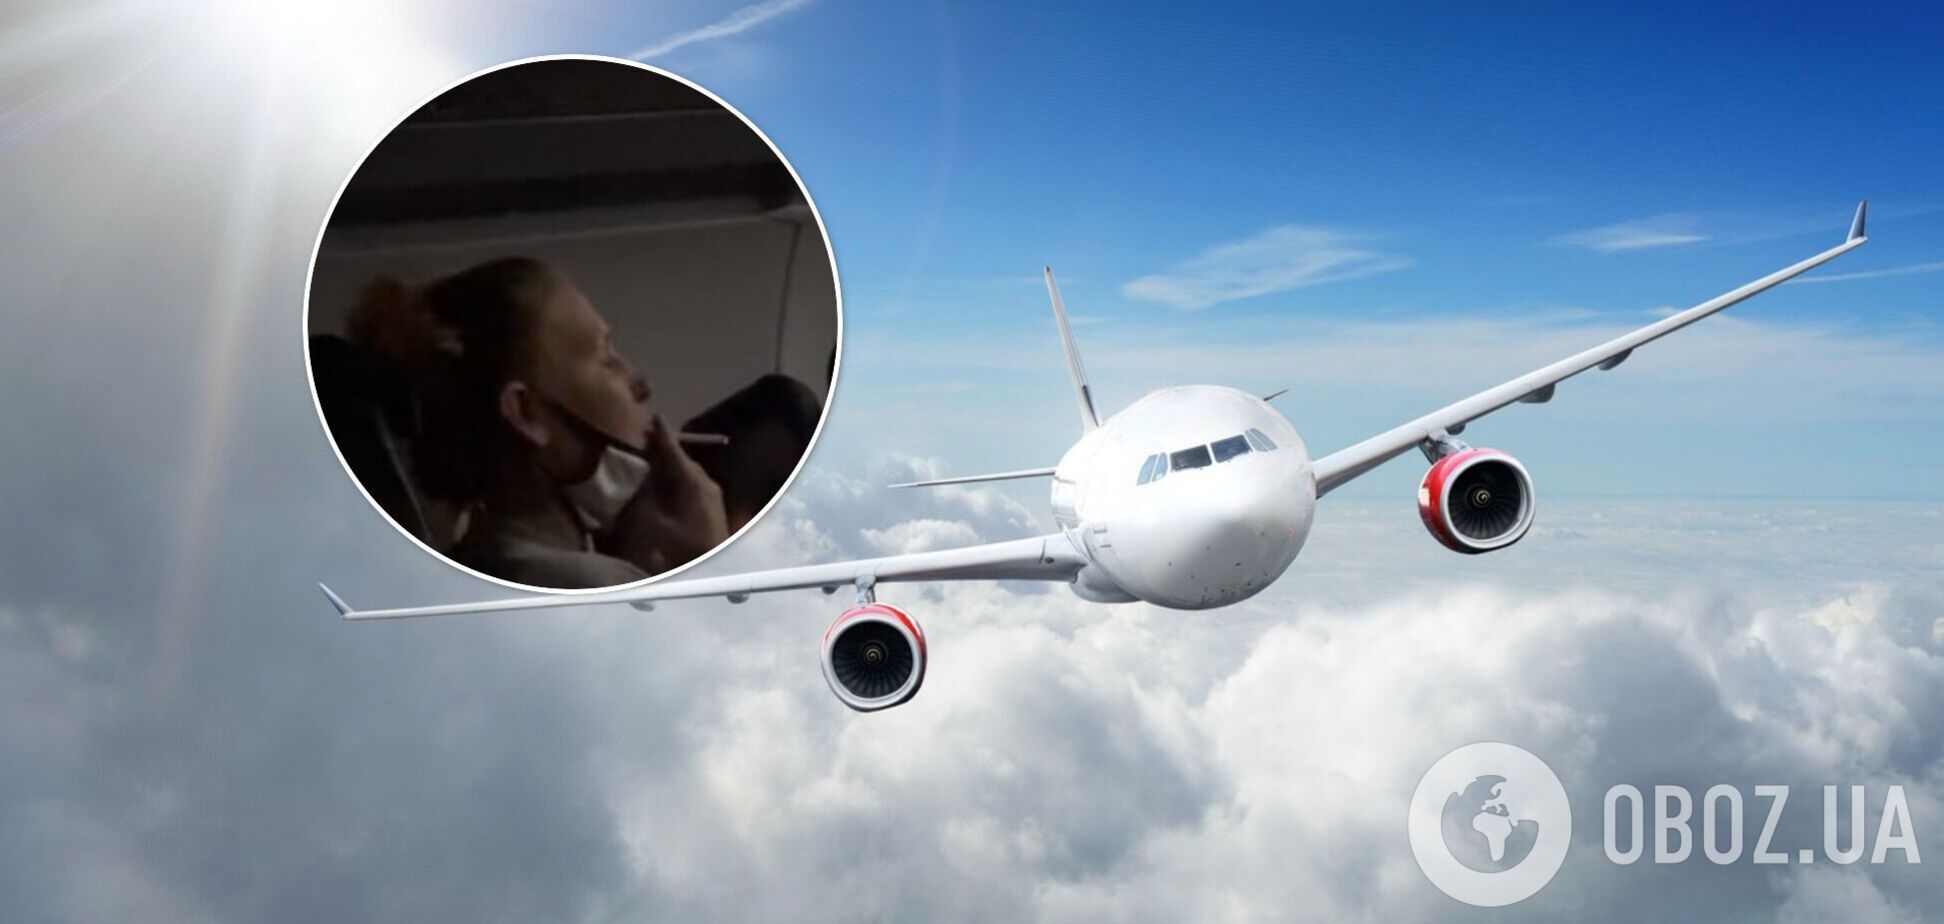 Пасажирка літака влаштувала скандал, коли їй заборонили курити. Відео